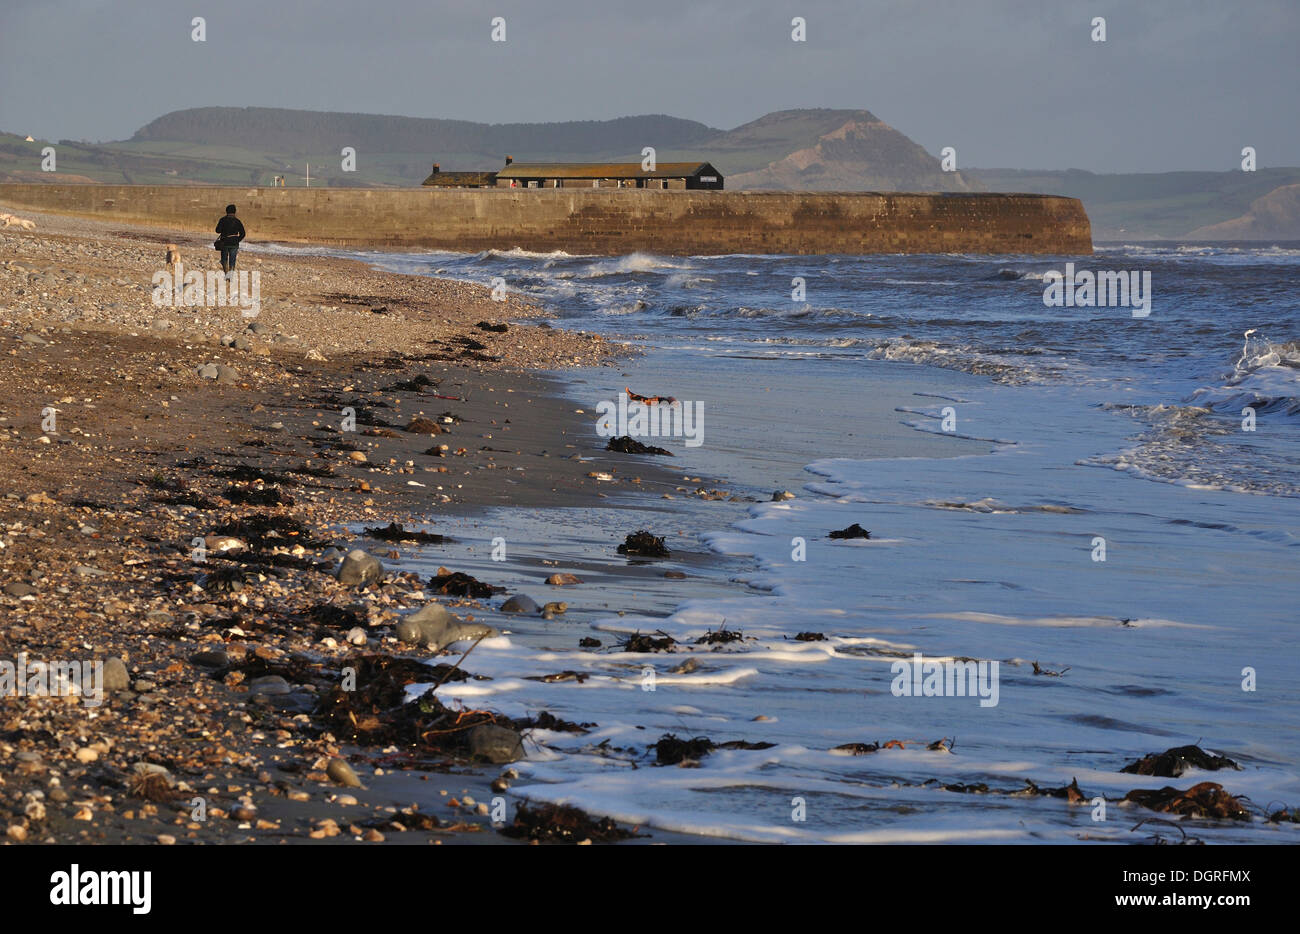 Une personne a un chien marche sur Monmouth Beach, Lyme Regis Dorset UK Banque D'Images